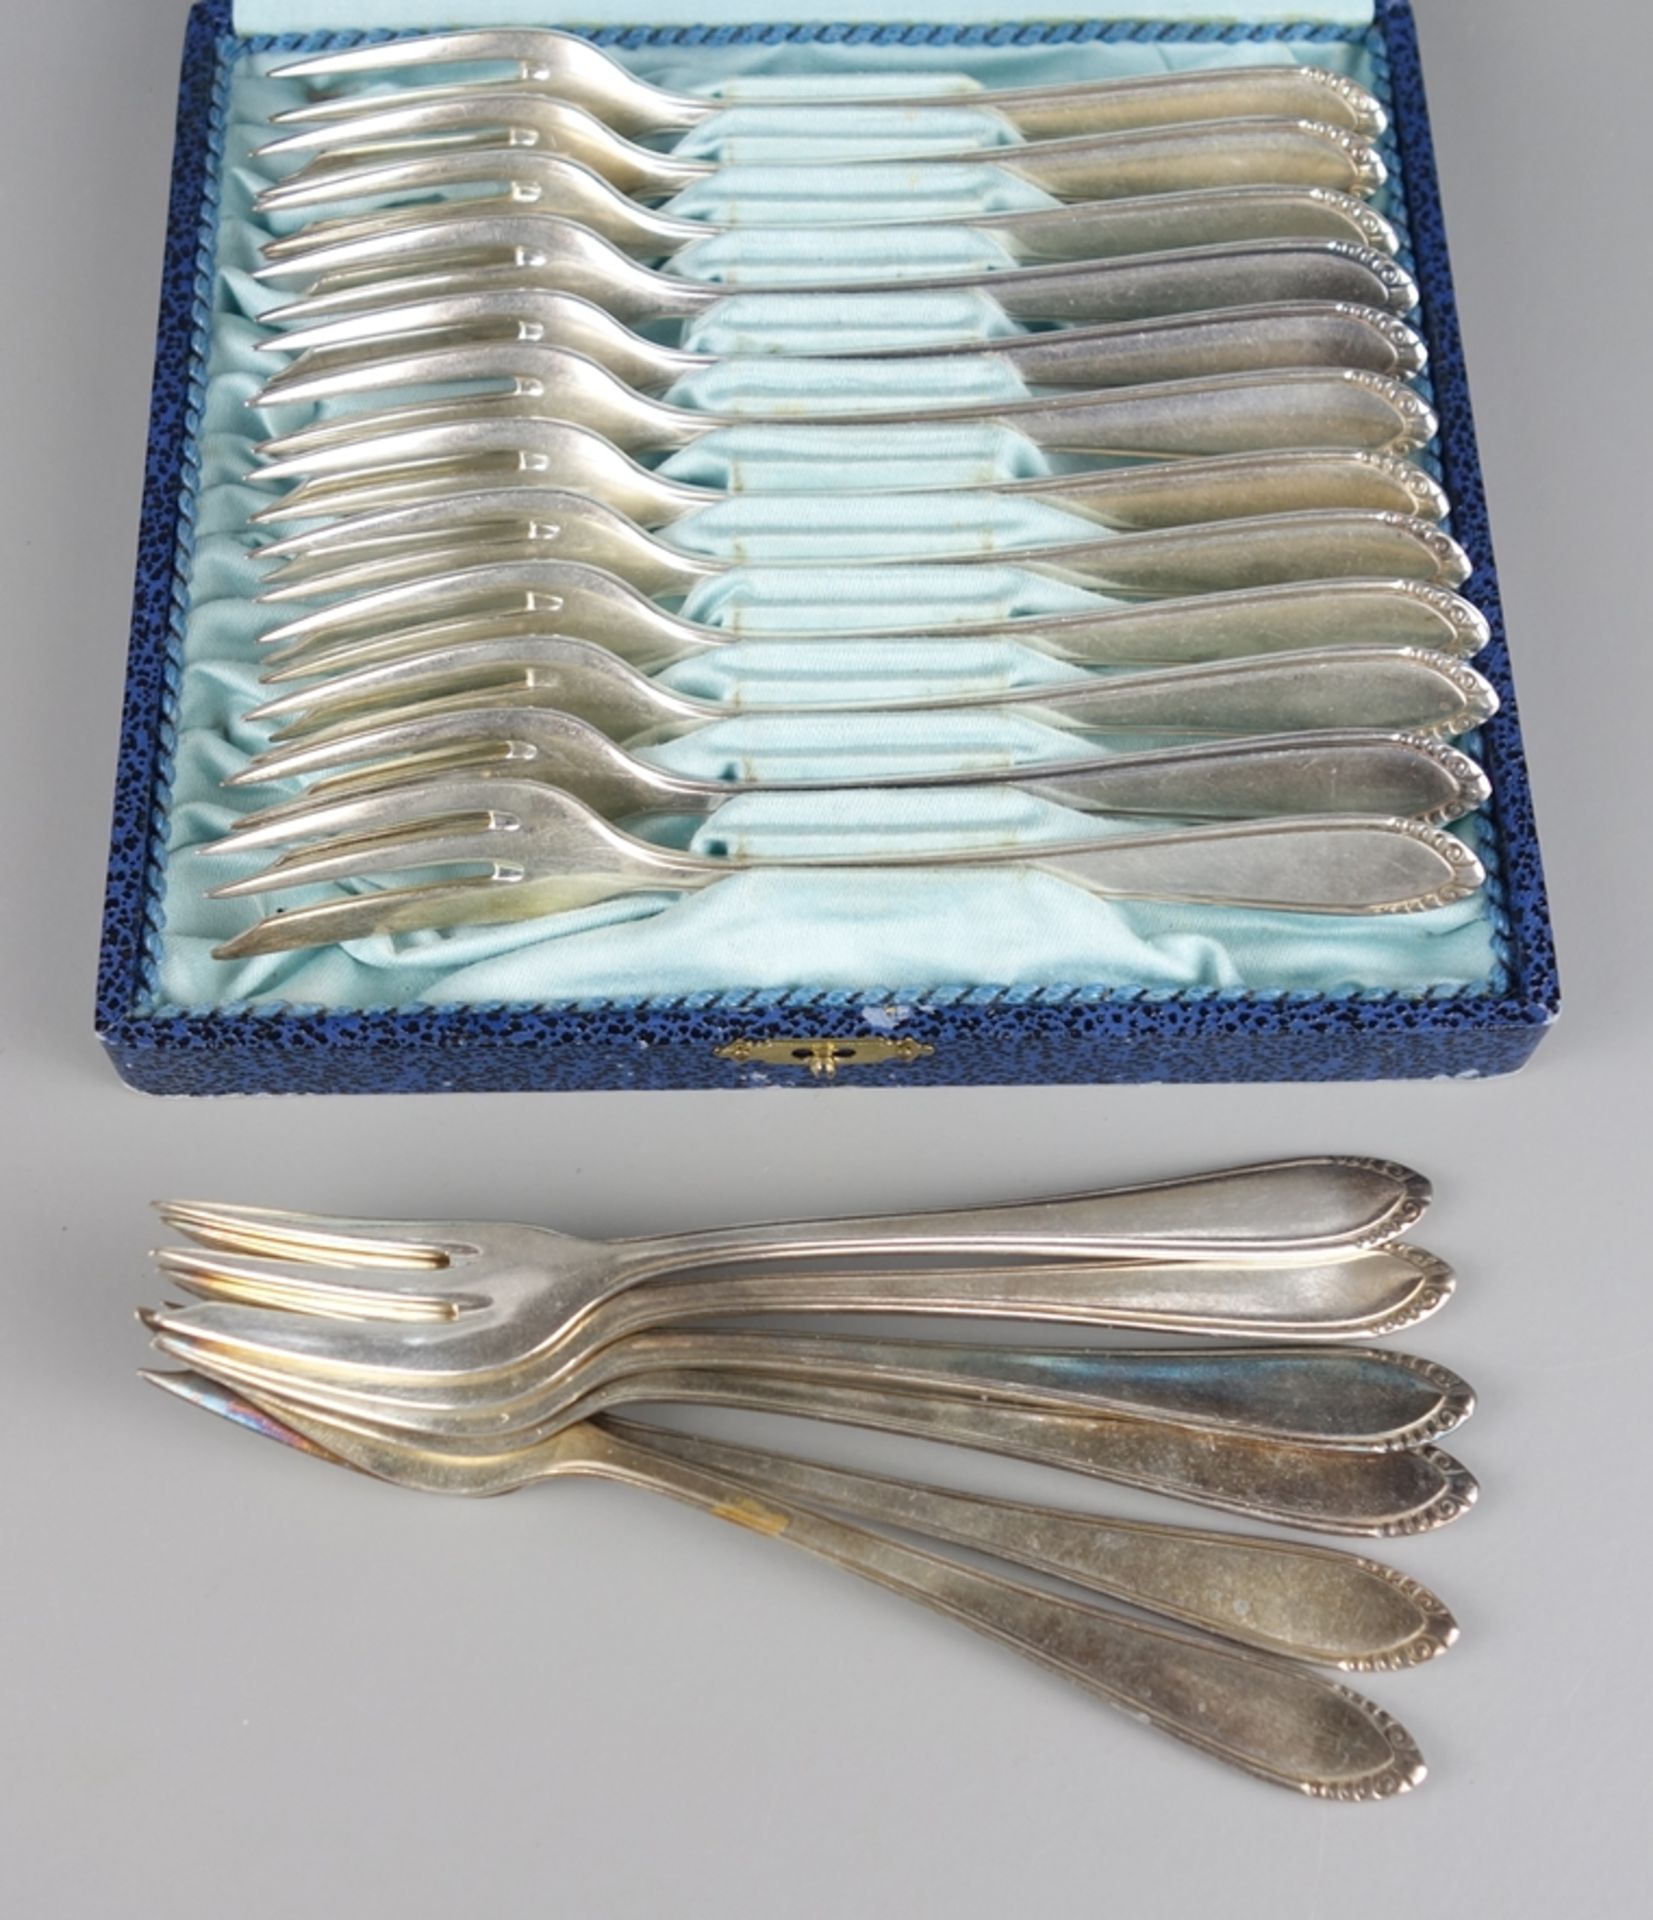 18 cake forks, c. 1925, 100 silver plating